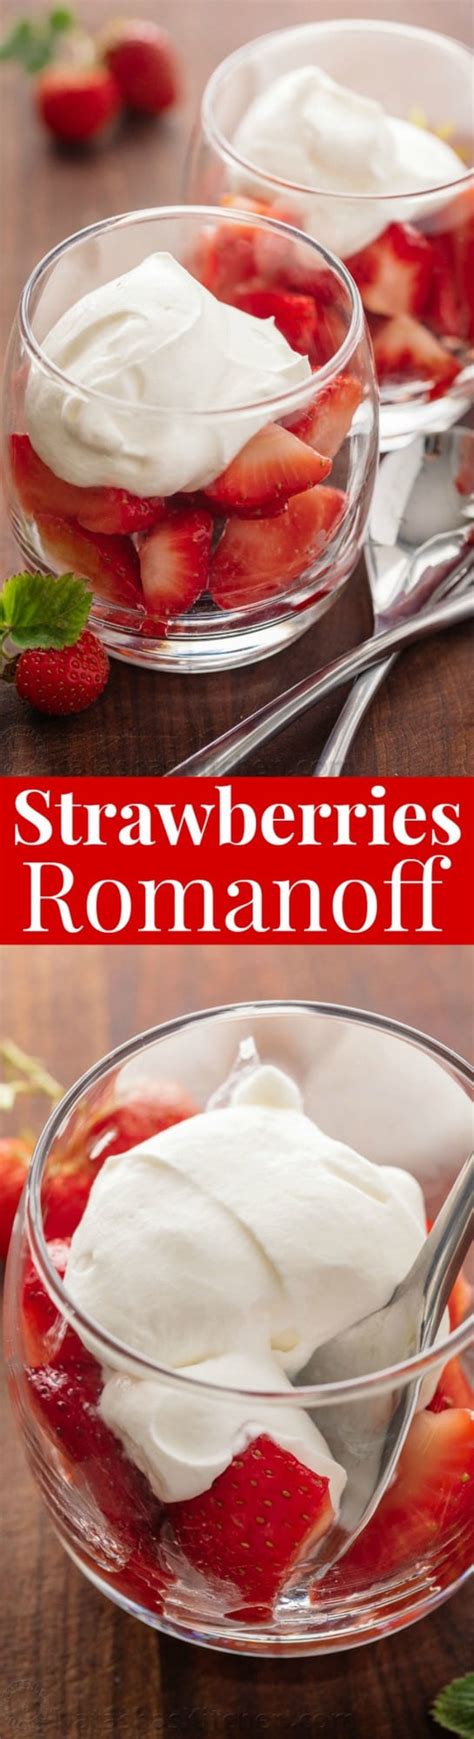 Strawberries Romanoff Recipe - NatashasKitchen.com